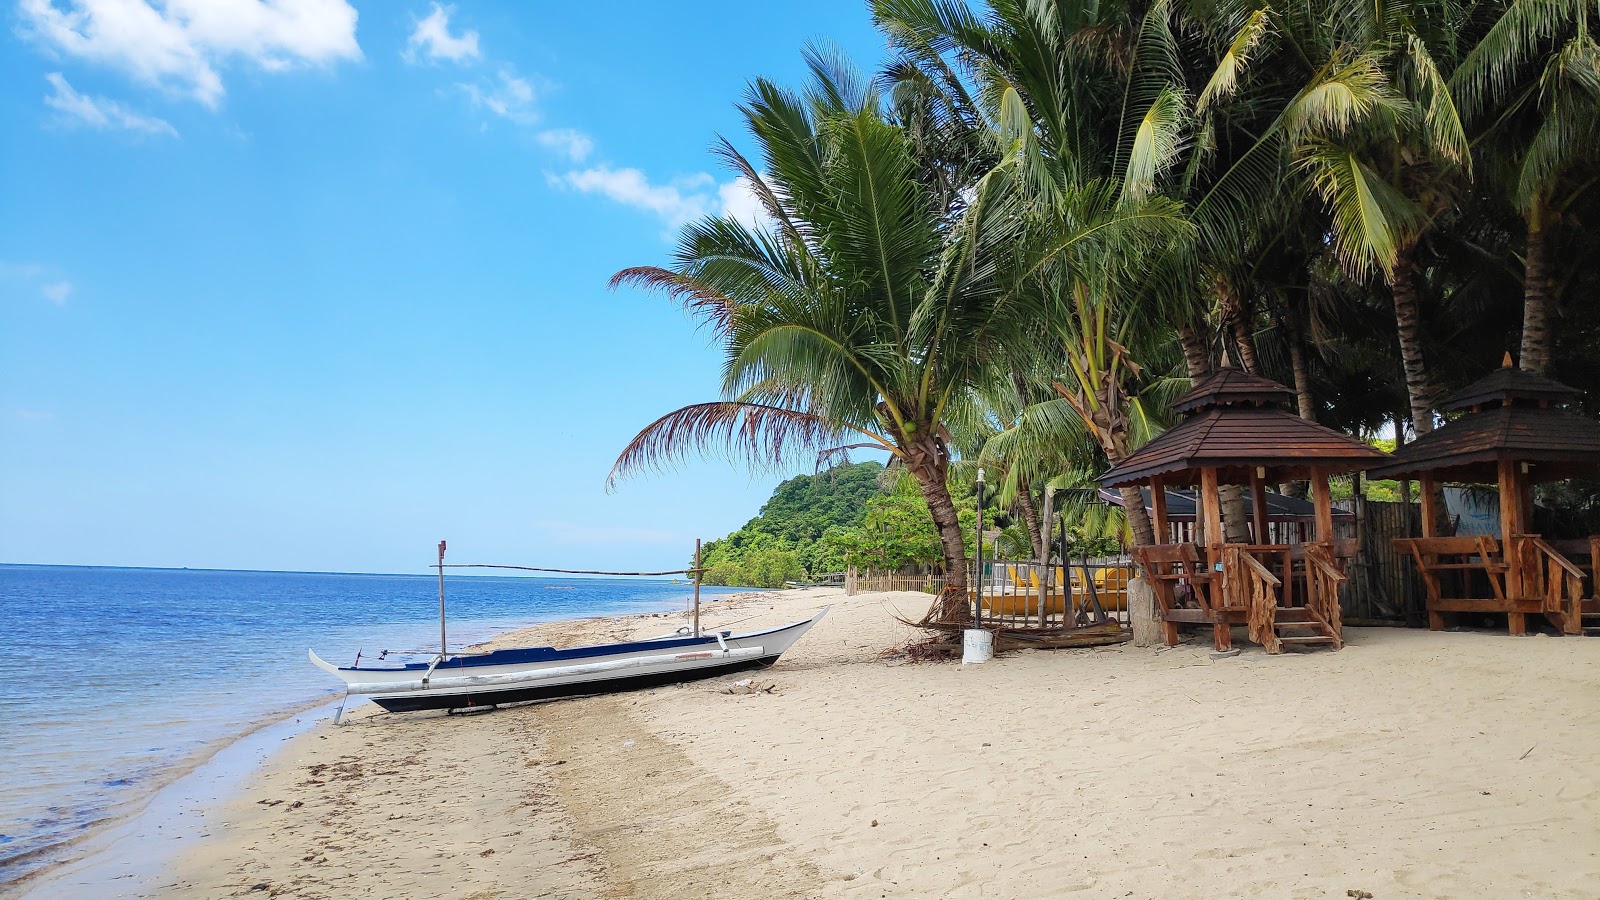 Lian batangas beach'in fotoğrafı - rahatlamayı sevenler arasında popüler bir yer